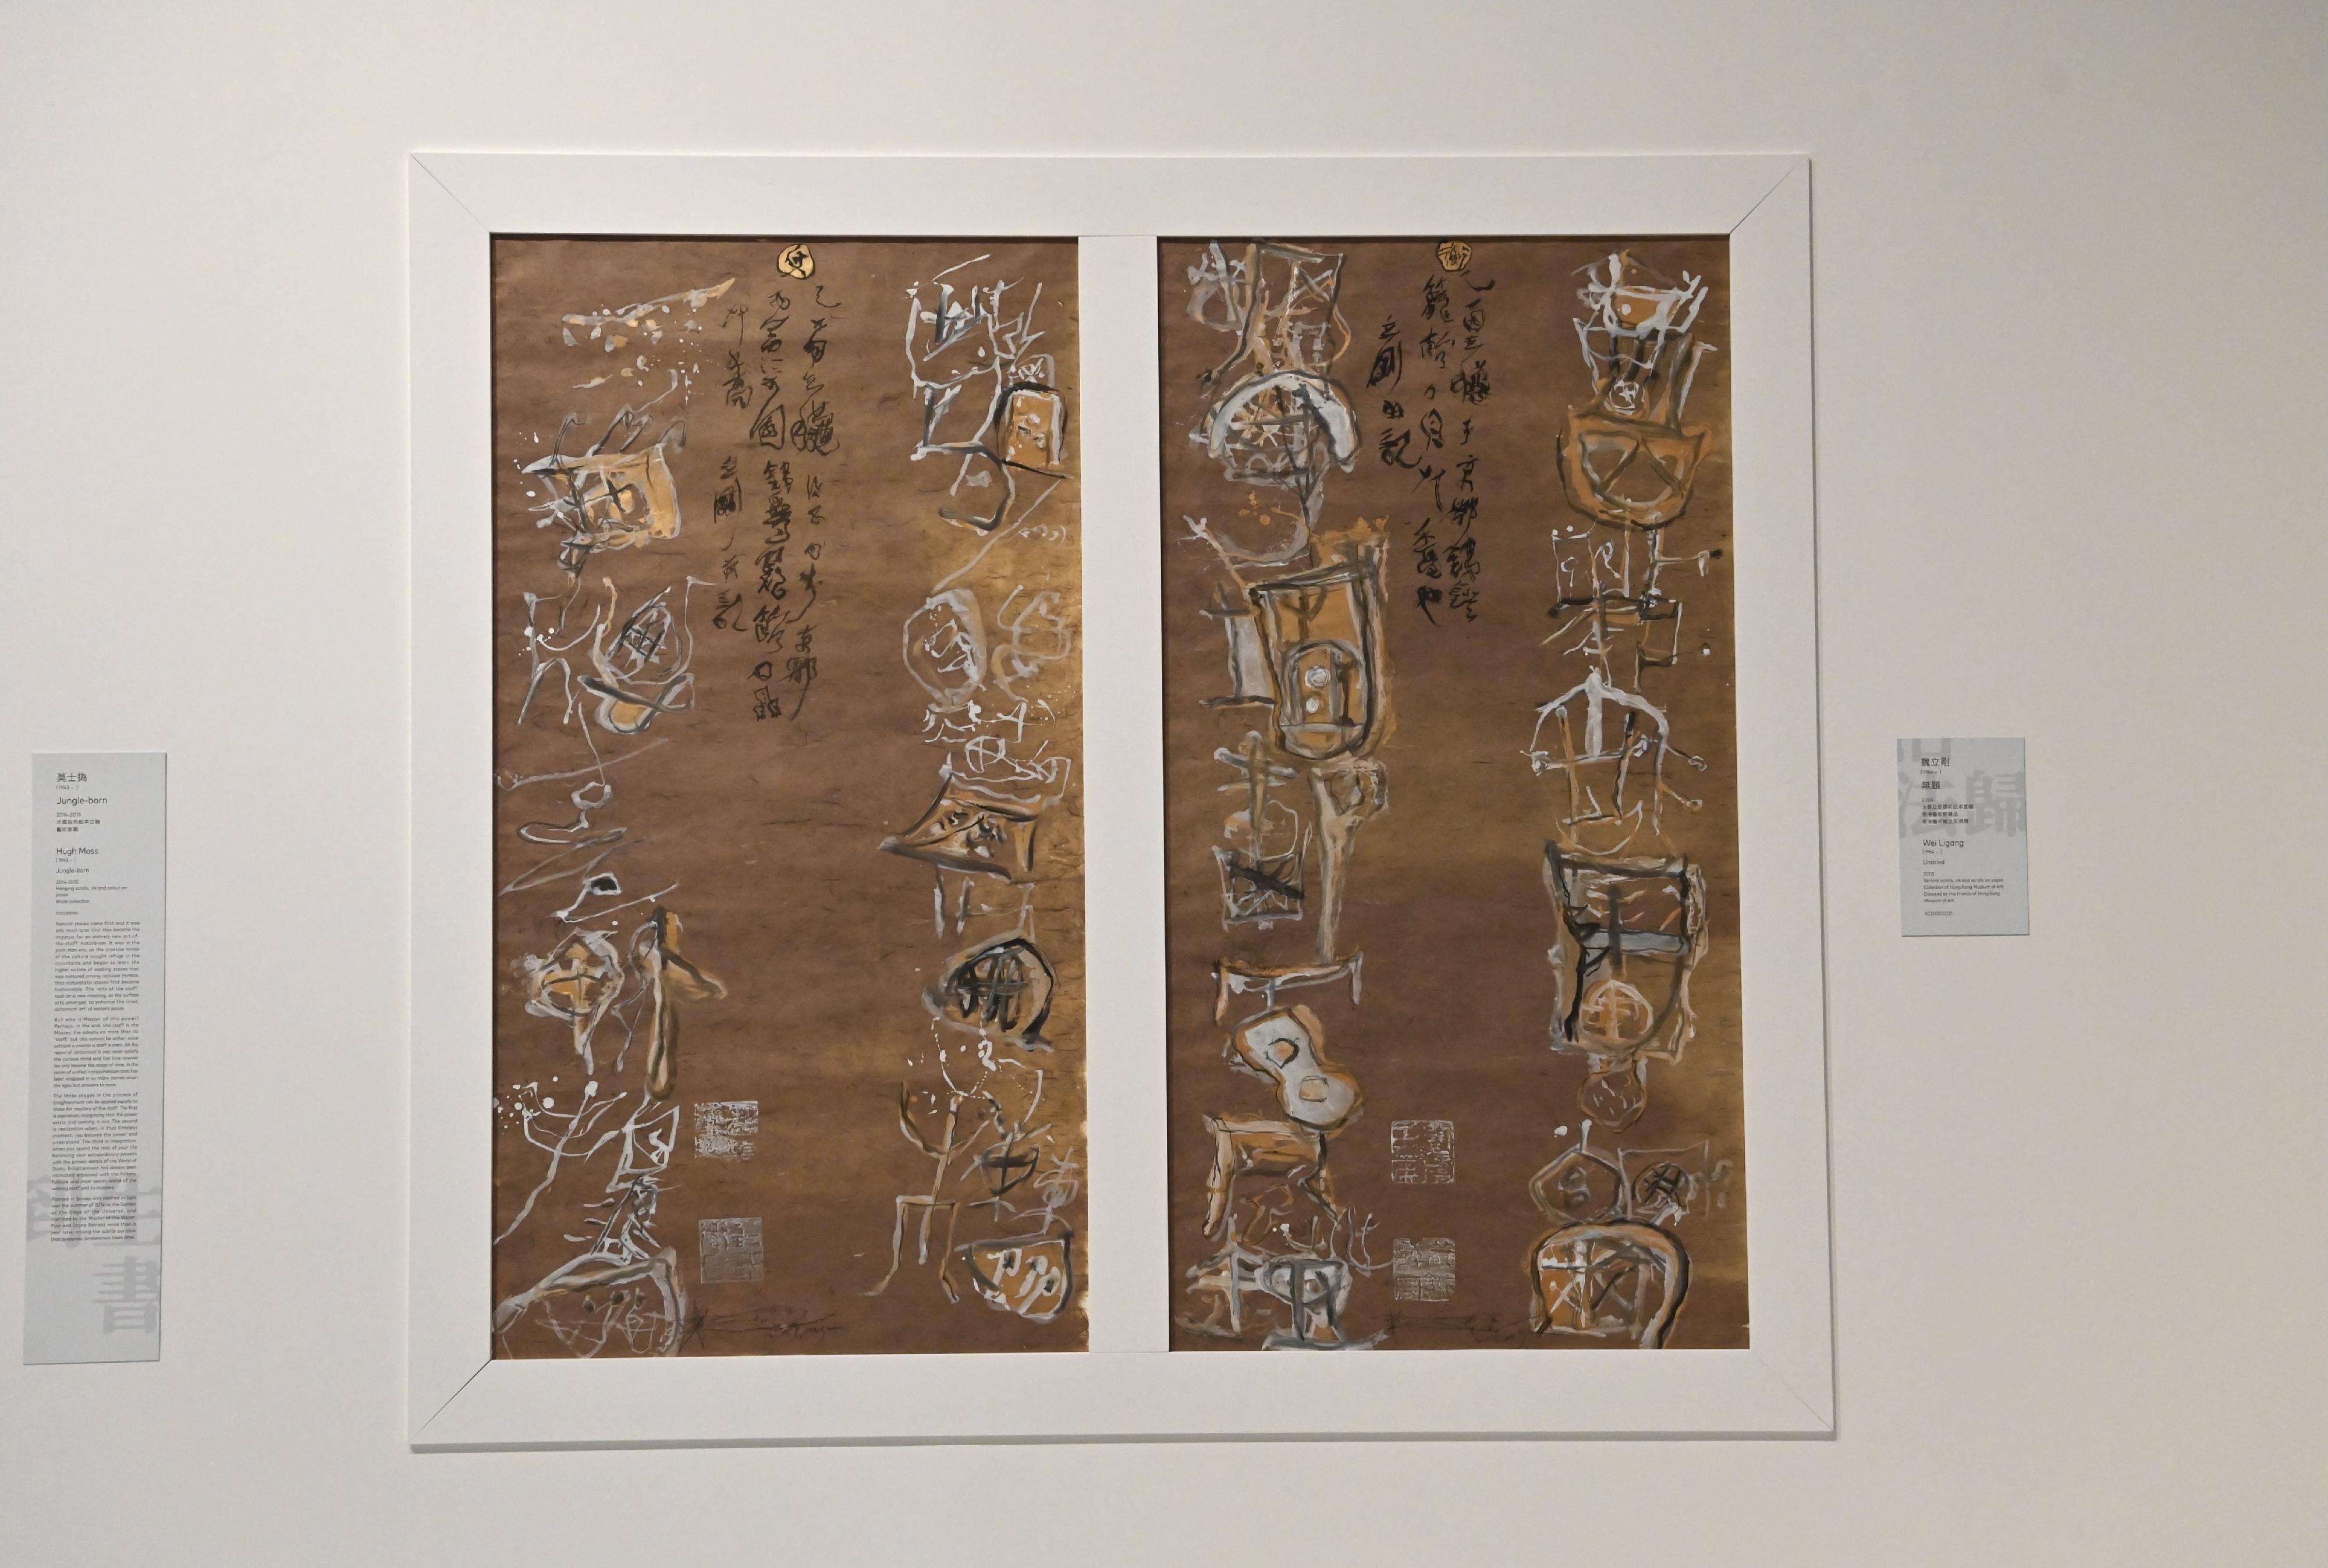 「字由人──漢字創意集」展覽明日（九月九日）起在香港藝術館舉行。圖示中國當代藝術家魏立剛的作品《無題》。